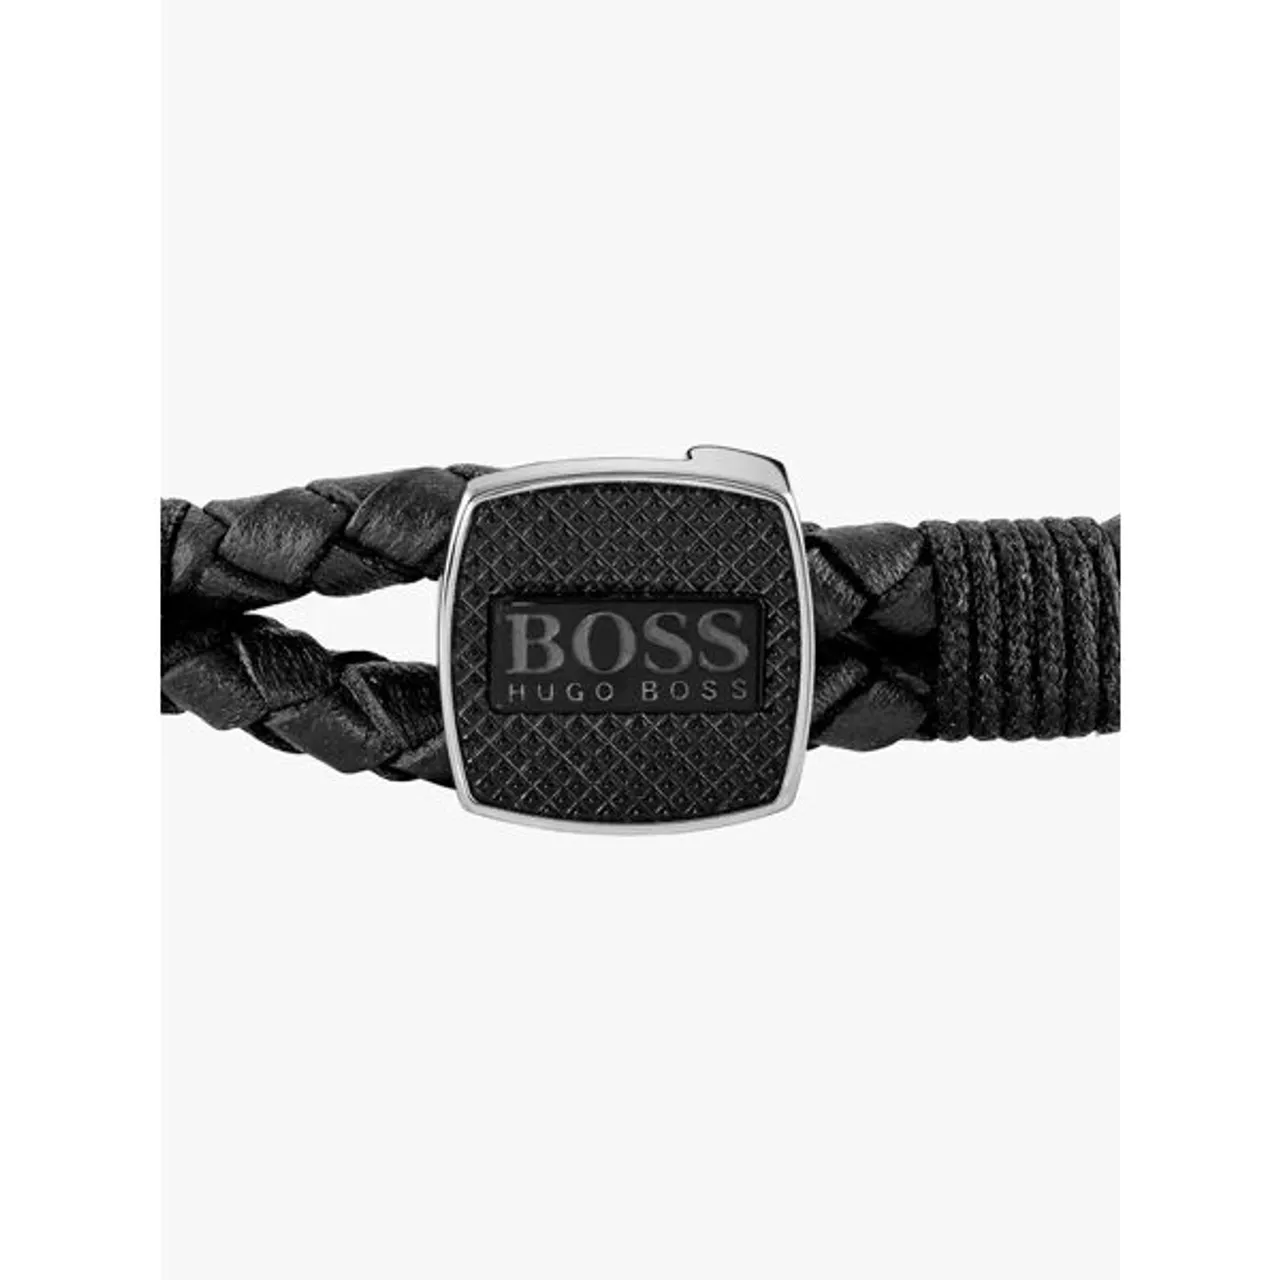 Hugo Boss BOSS Men's Braided Leather Bracelet - Black - Male